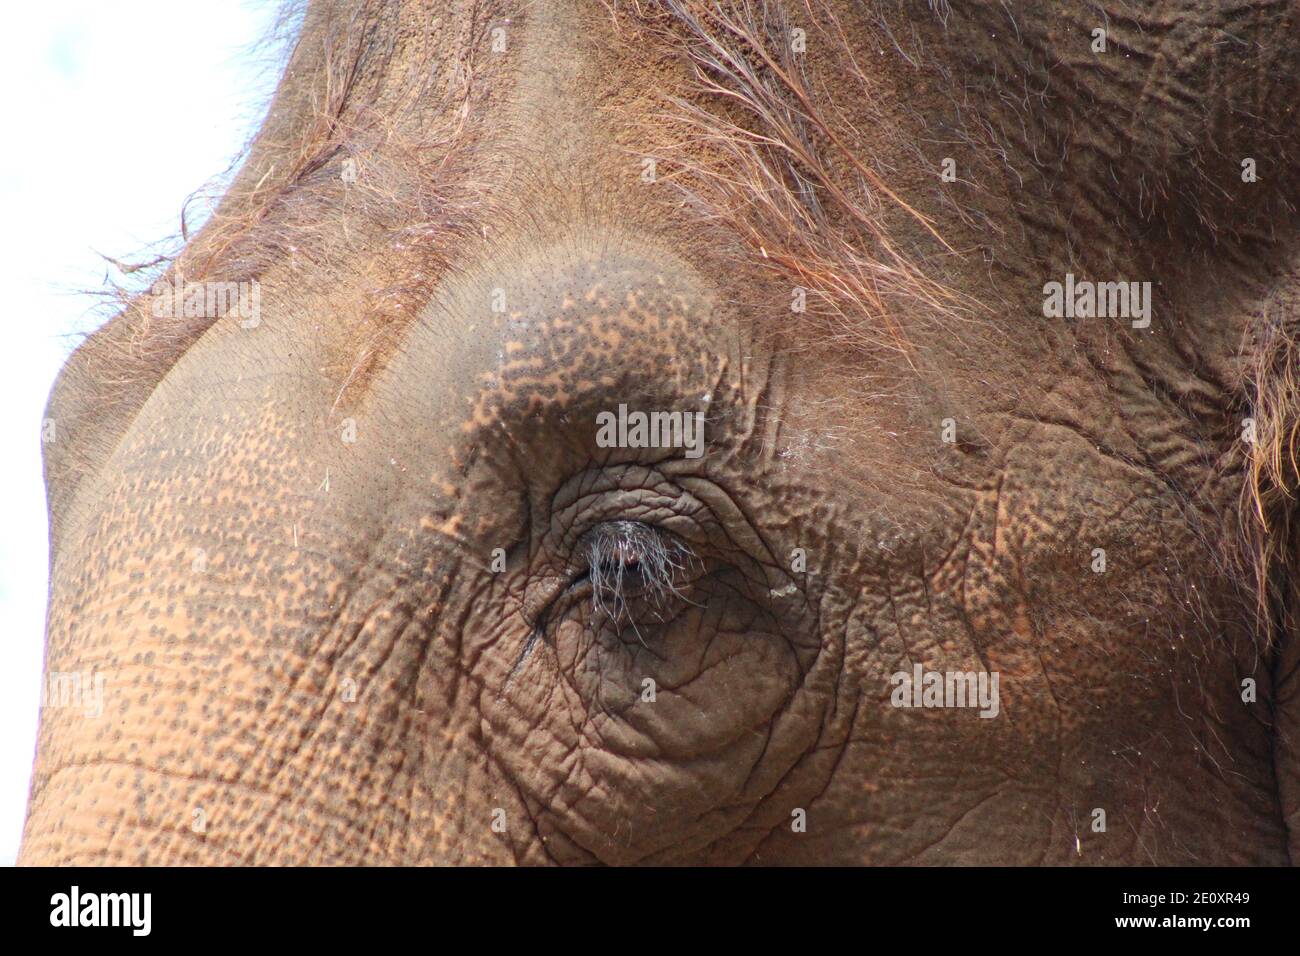 Nahaufnahme des Auges eines asiatischen Elefanten Stockfoto